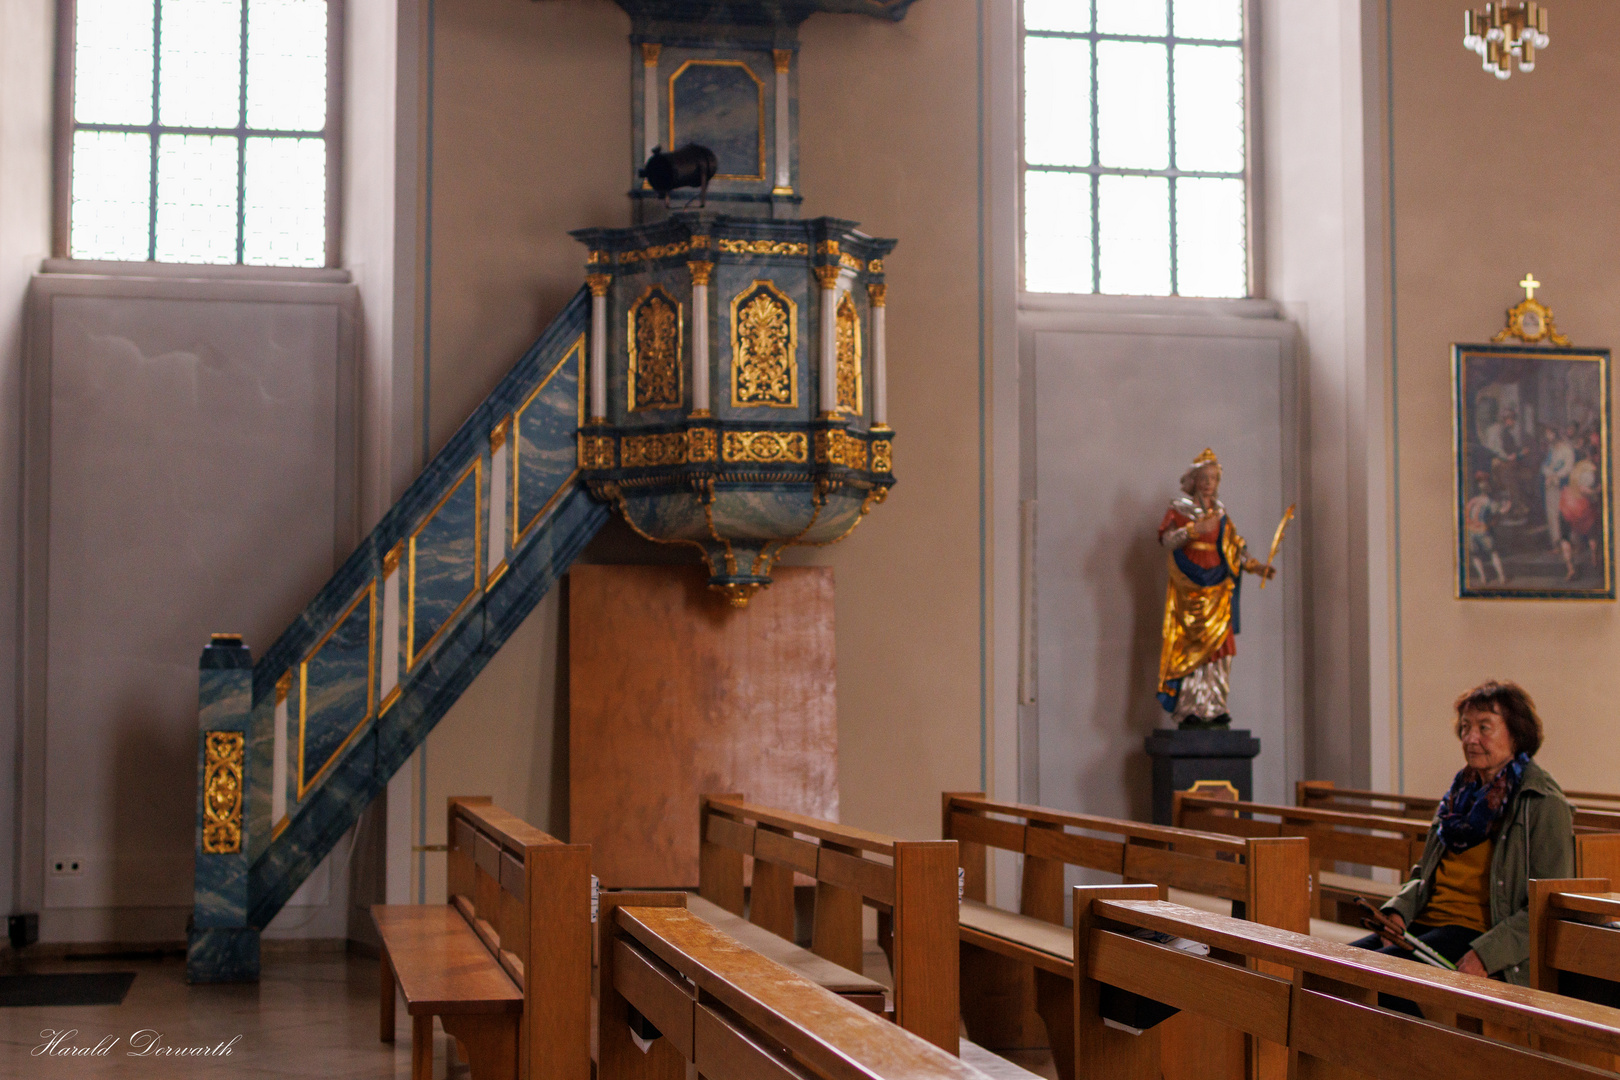 Malsch - Barocke Kanzel und Kirchenpatronin St. Juliana